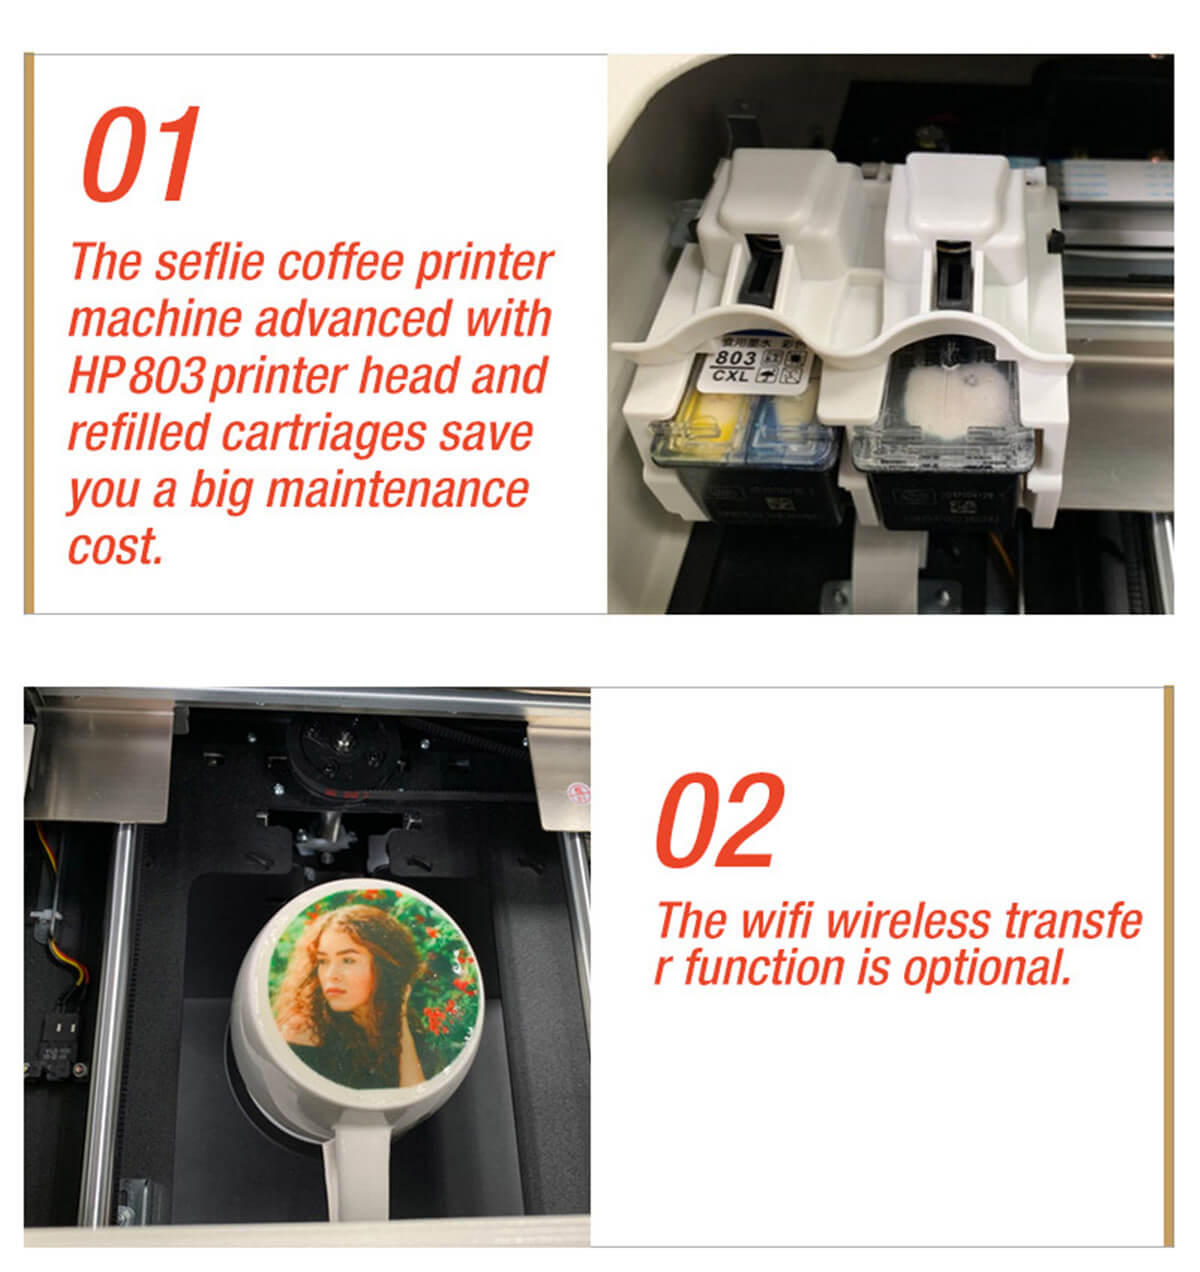 latte-art-printing-machine02